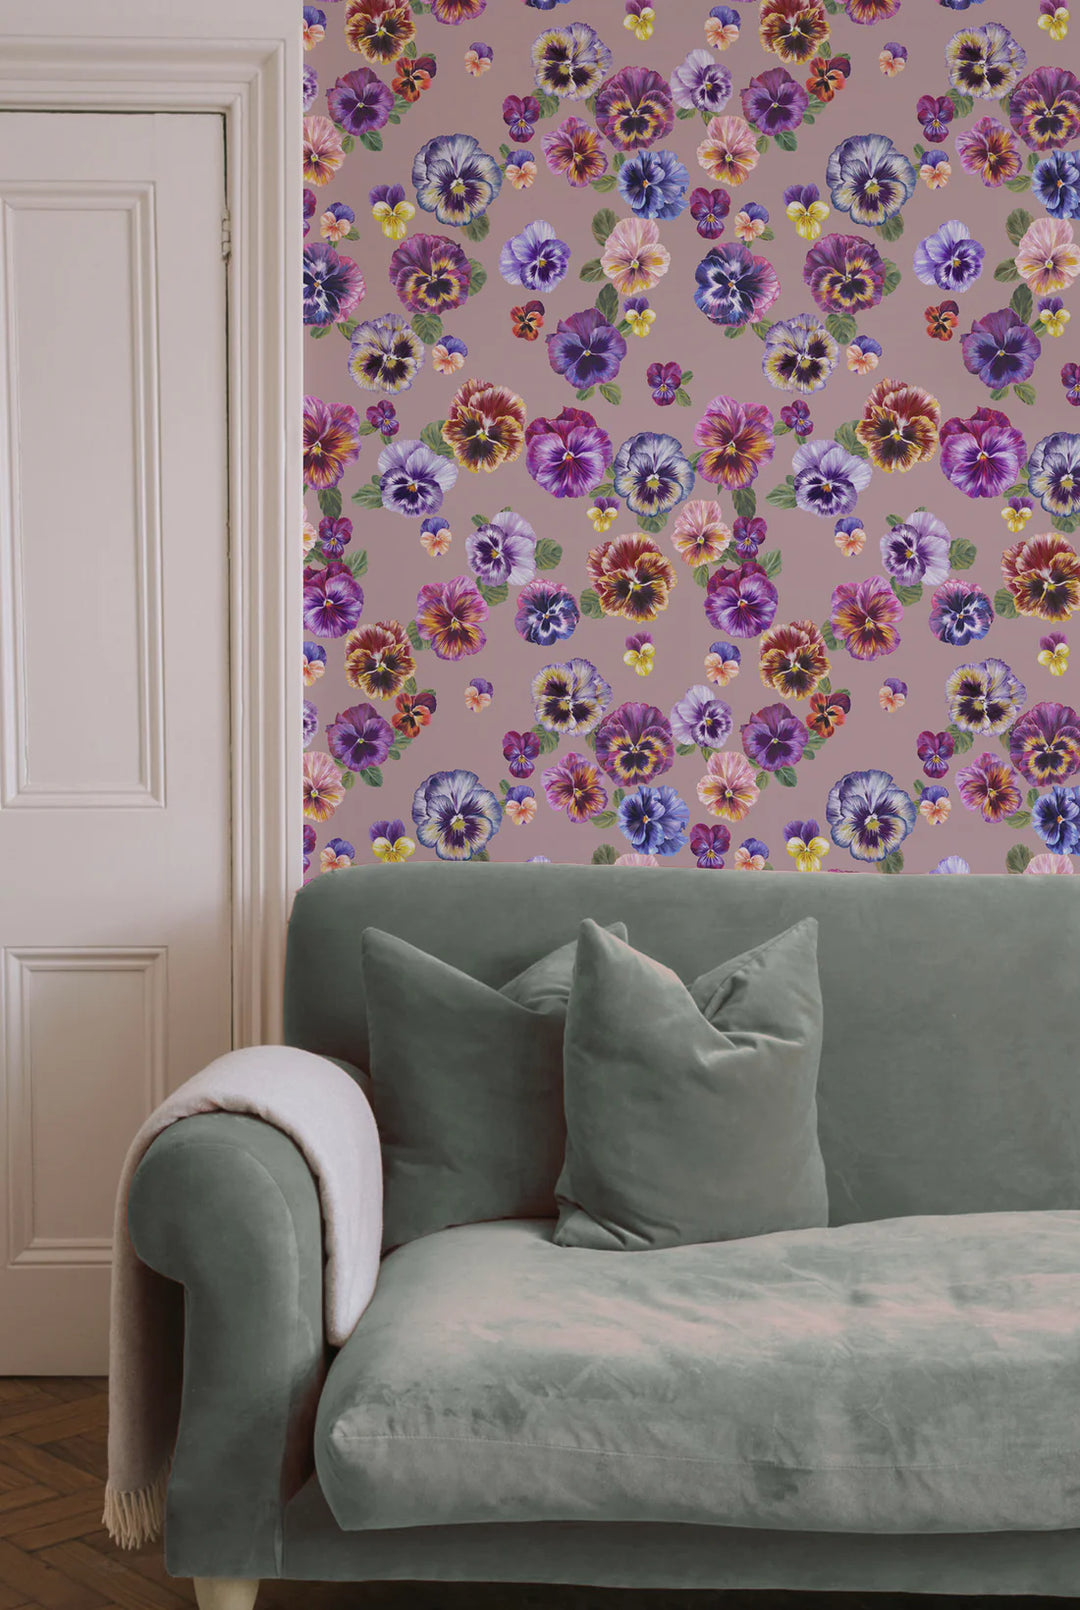 Victoria-Sanders-Plethora-of-pansies-hand-painted-details-pansies-in-bruised-pink-back-background-wallpaper-floral-pattern